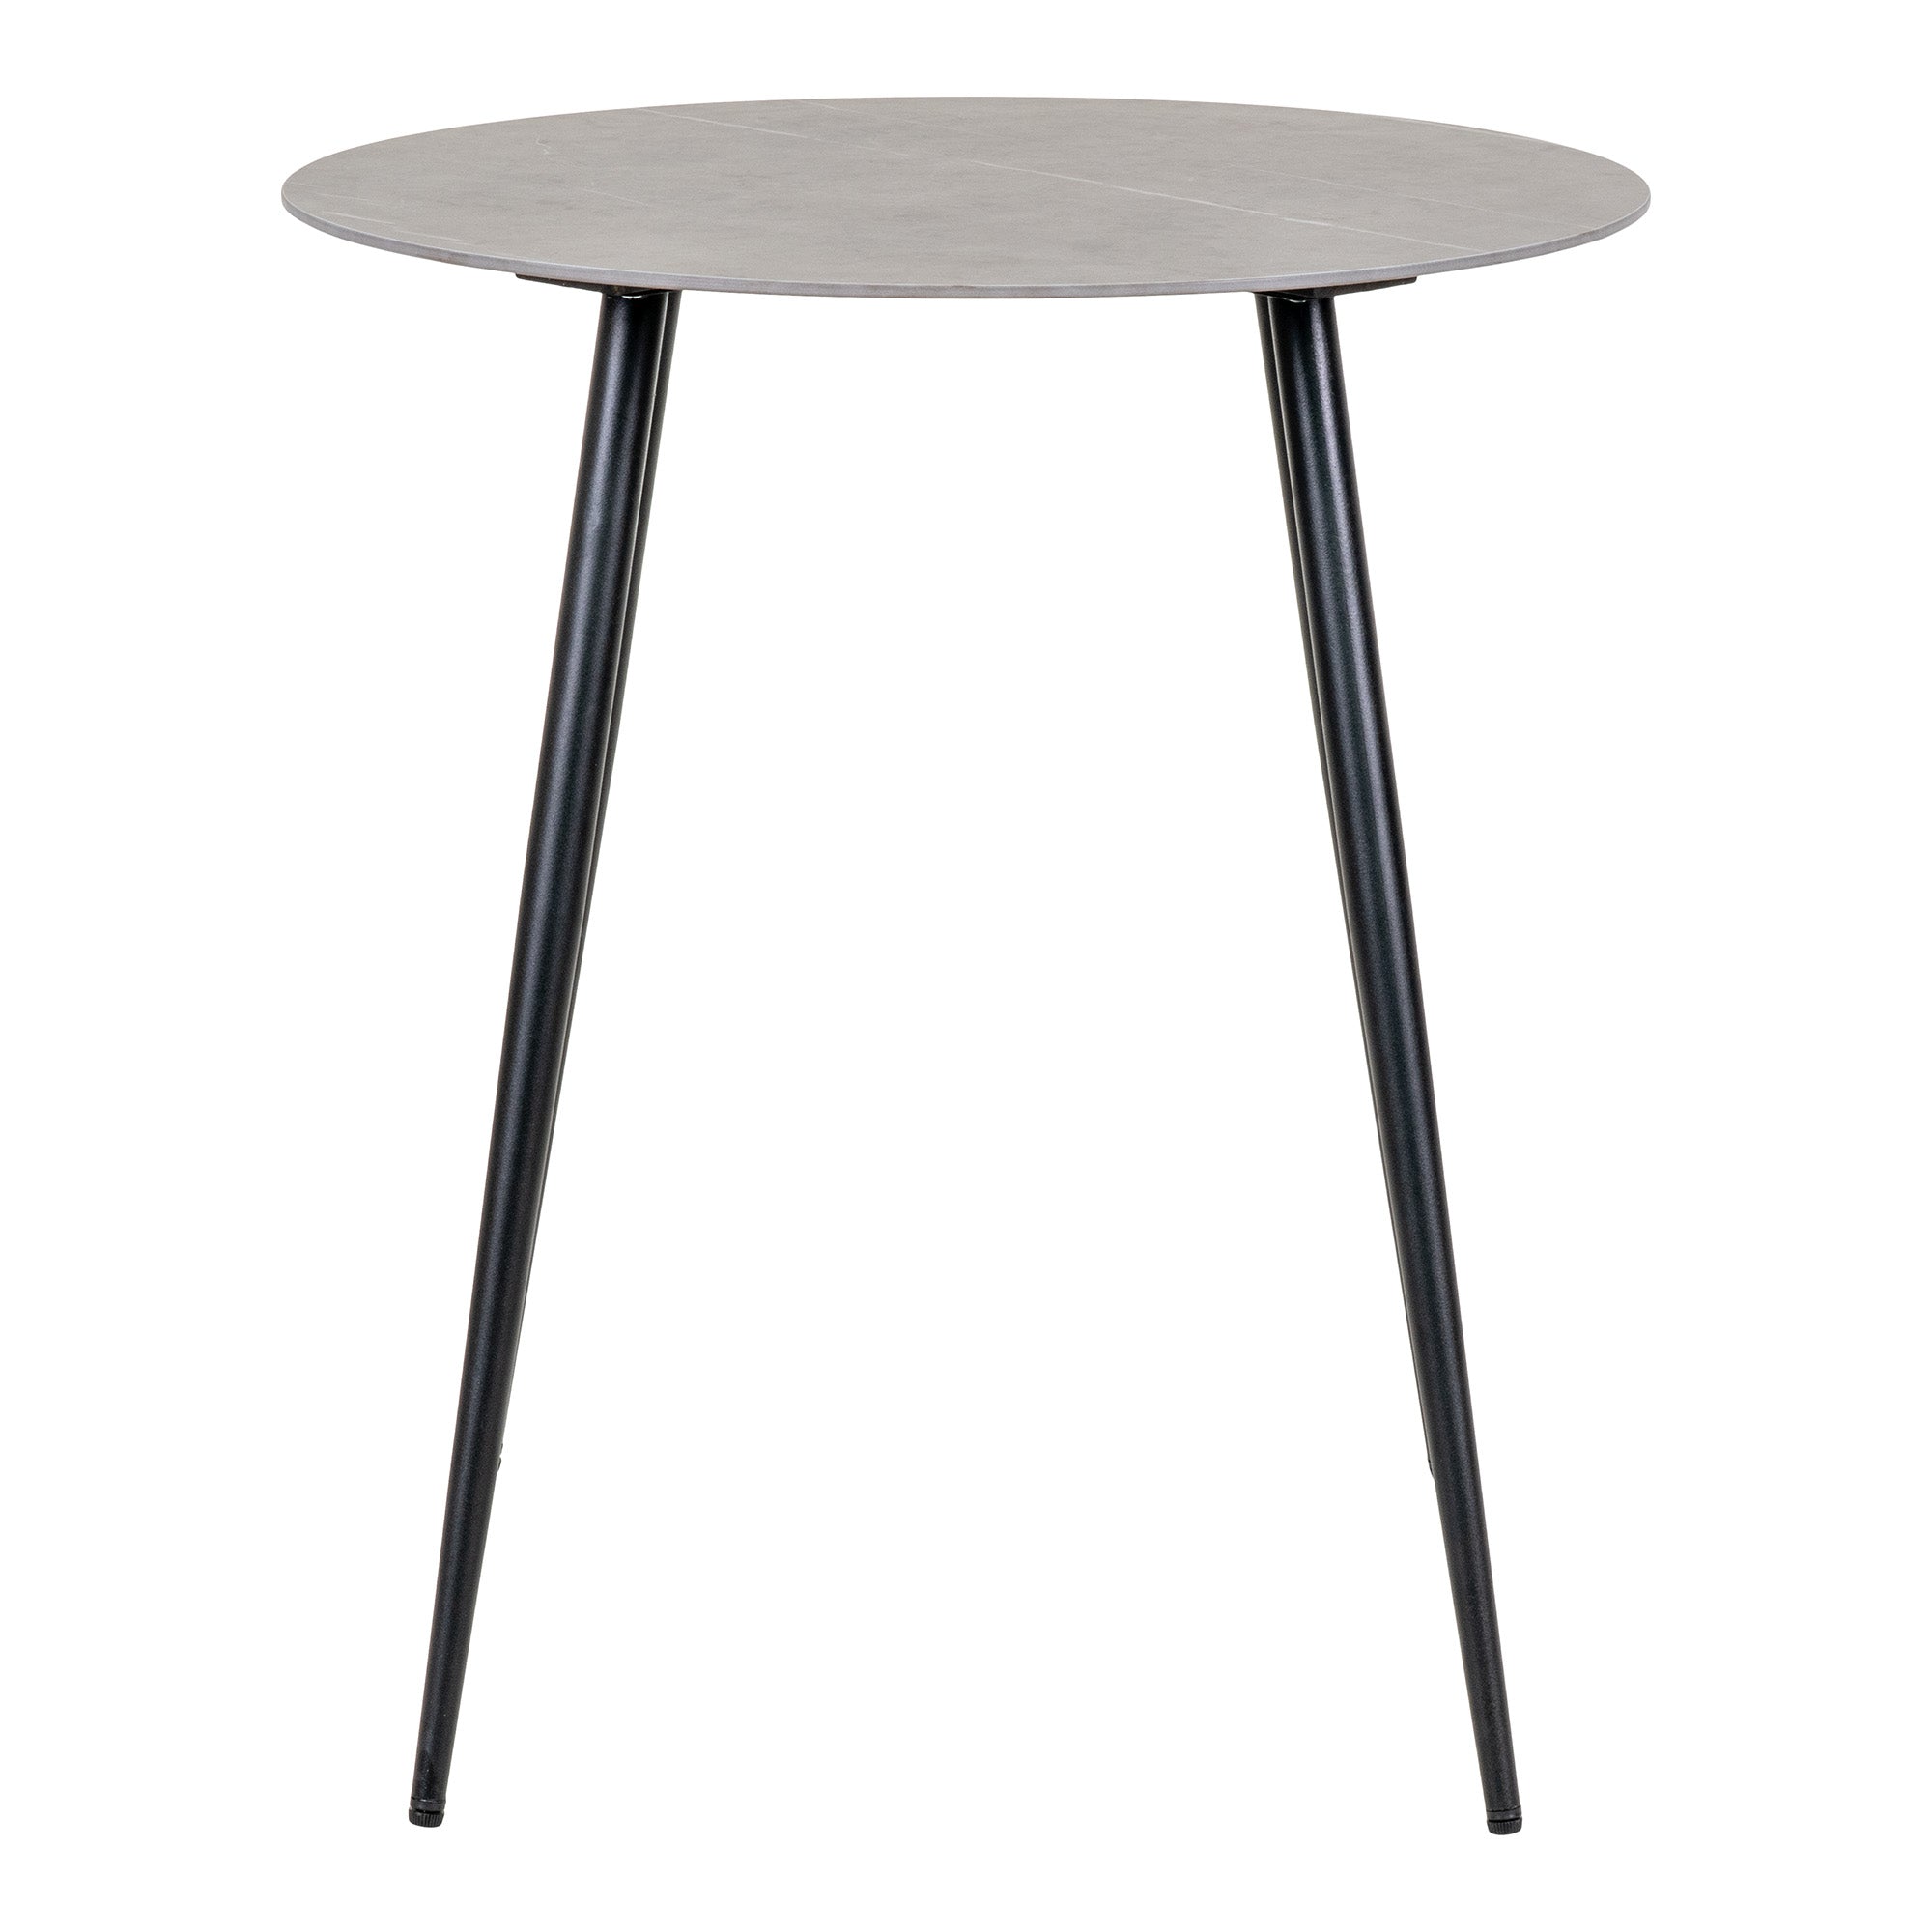 Lazio Cafébord - Cafébord Med Keramik Bordplade, Grå Med Sorte Ben, Ø60 Cm ⎮ 5713917023042 ⎮ 7501130 